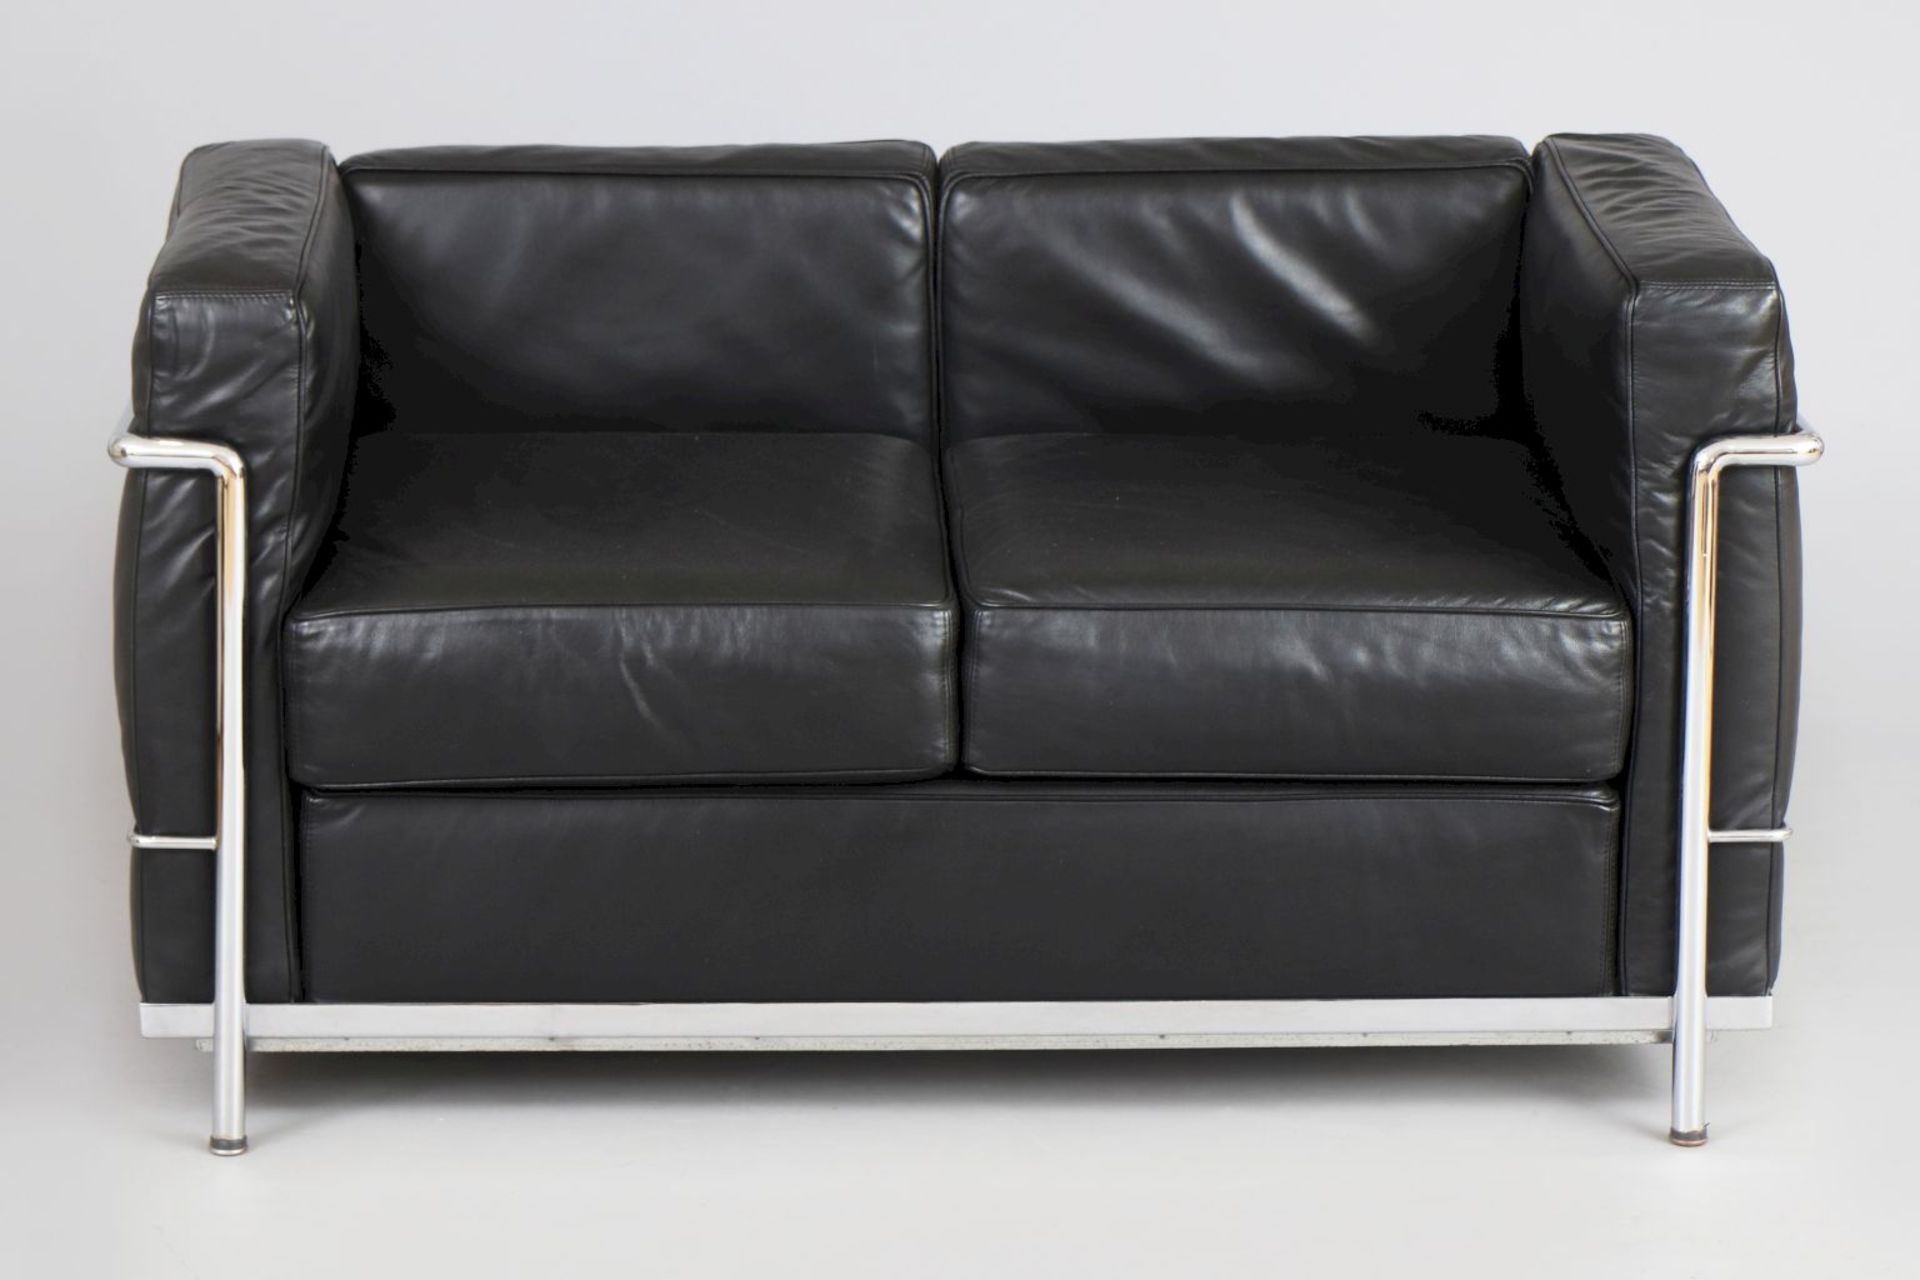 Sofa im Bauhaus-Stil2-sitzer, eckiger Rahmen aus verchromtem Stahlrohr, schwarz belederte Sitz-